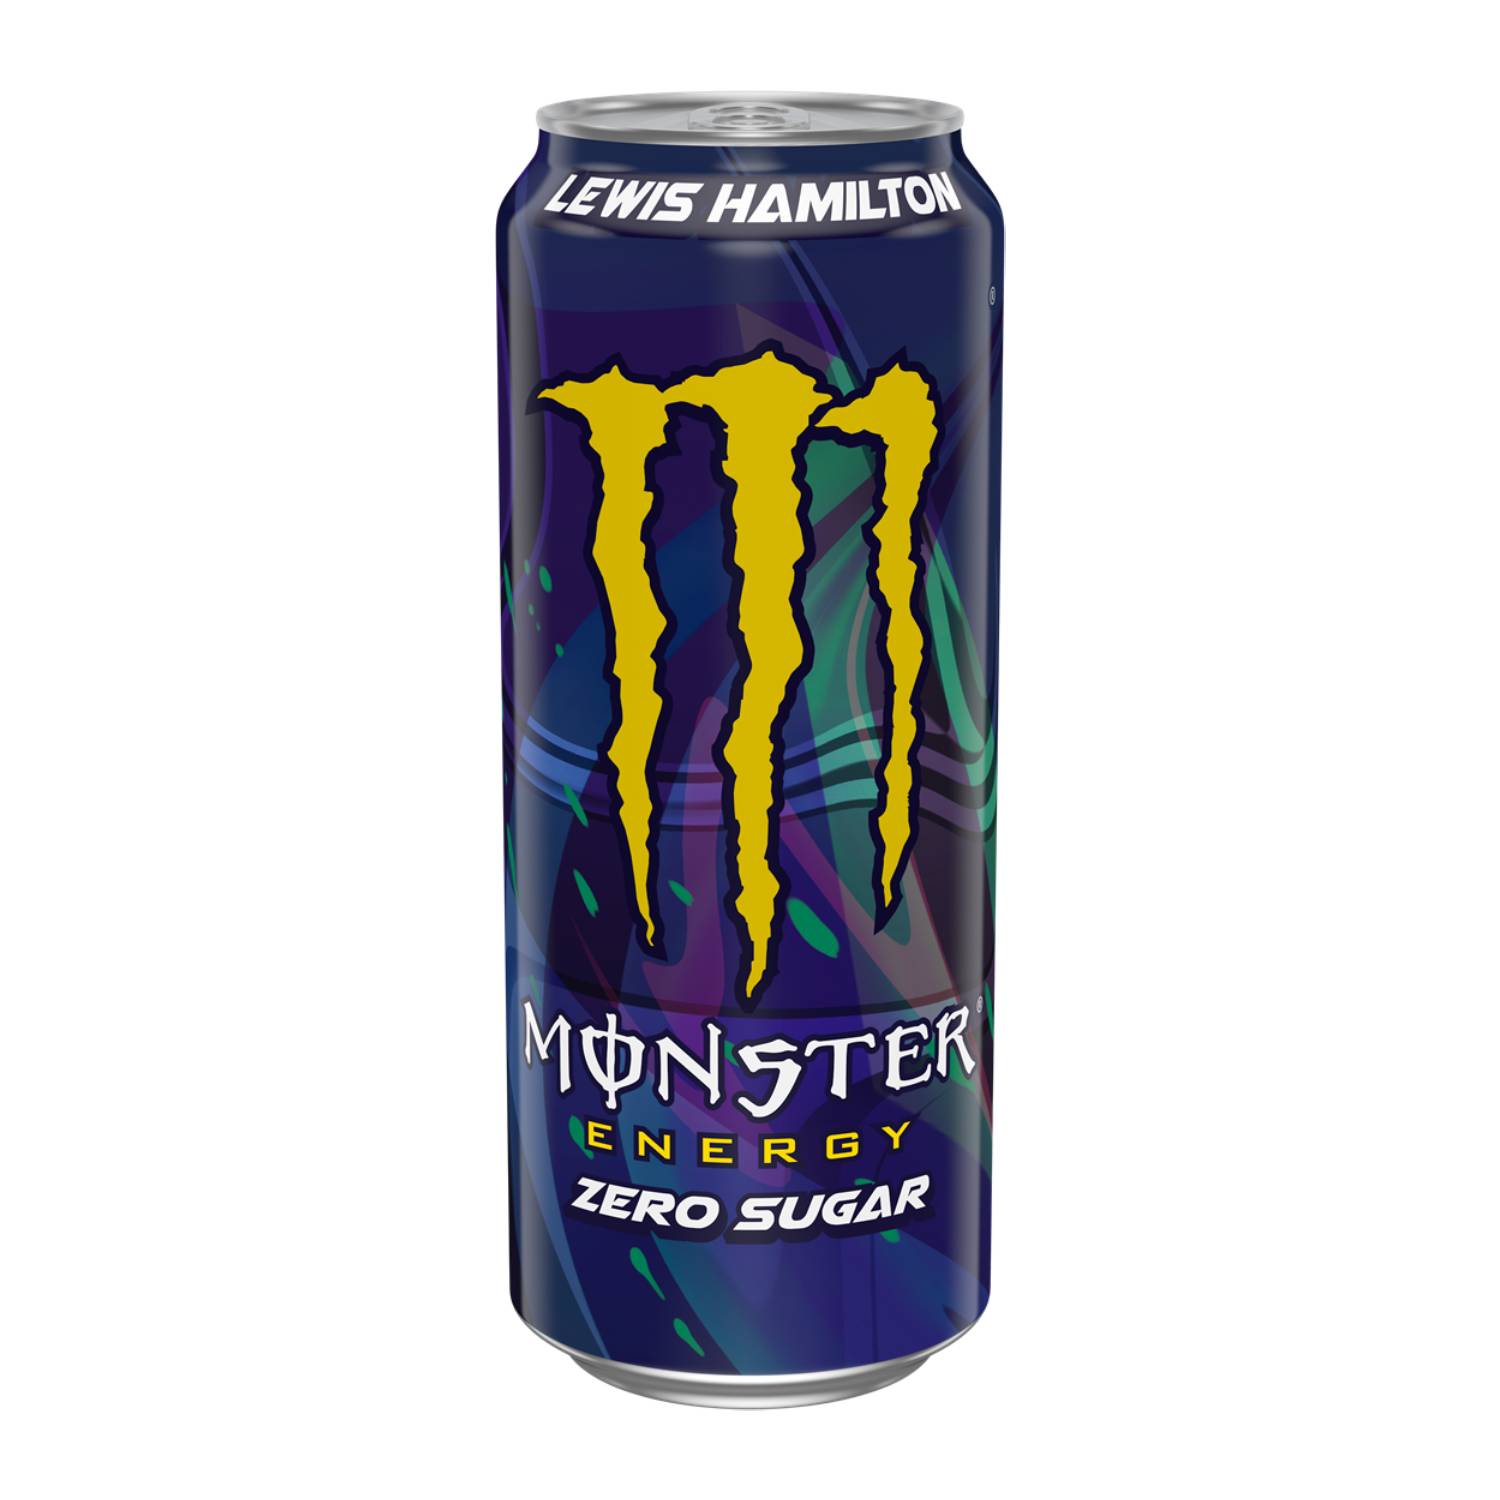 Monster Energy Lewis Hamilton Zero Sugar (500 ml) - van Monster Energy - Nu voor maar €1.95 bij Mijn Snoepgoed